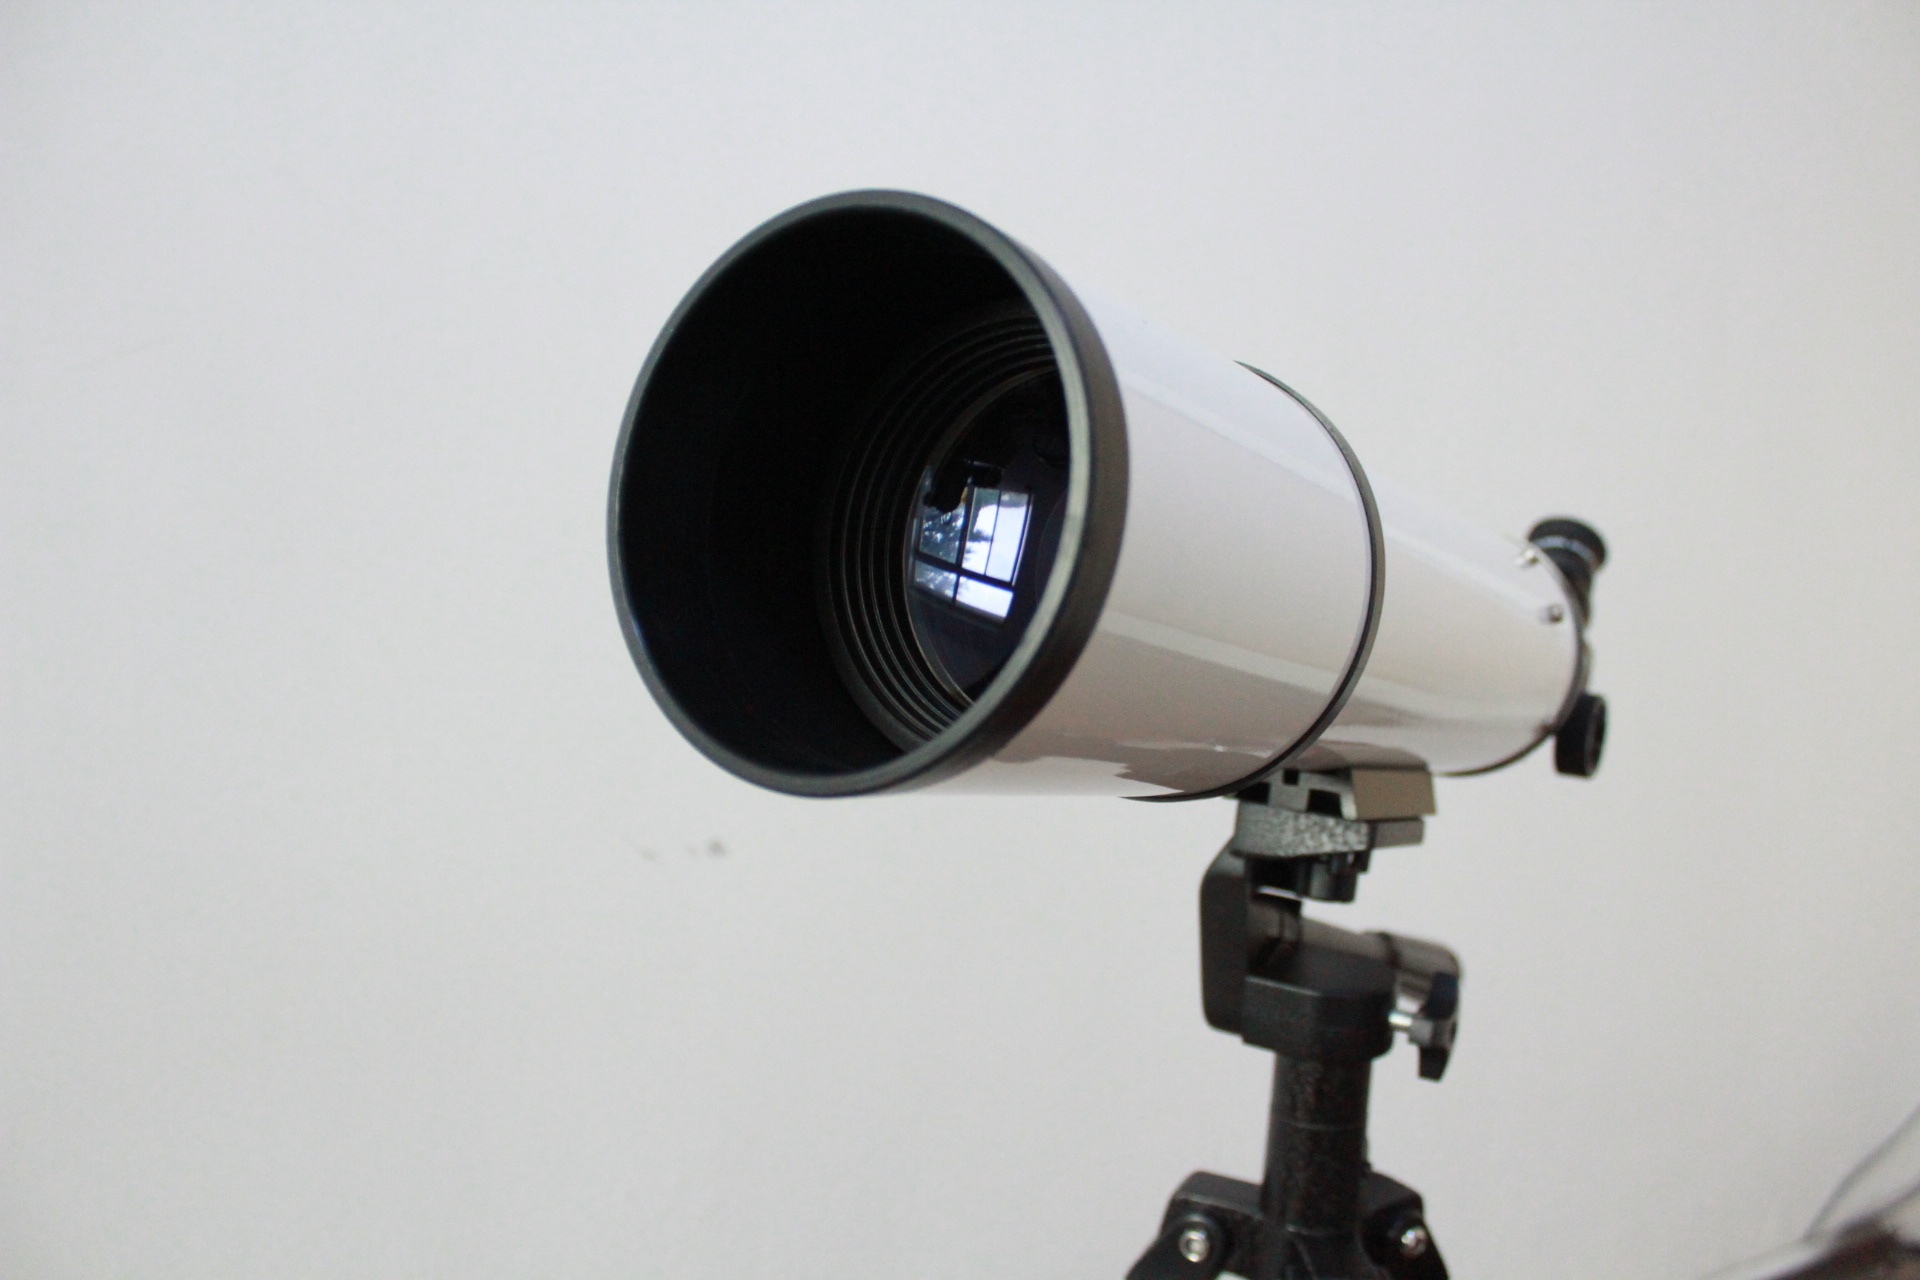 JK-HD-02型林格曼数码测烟望远镜